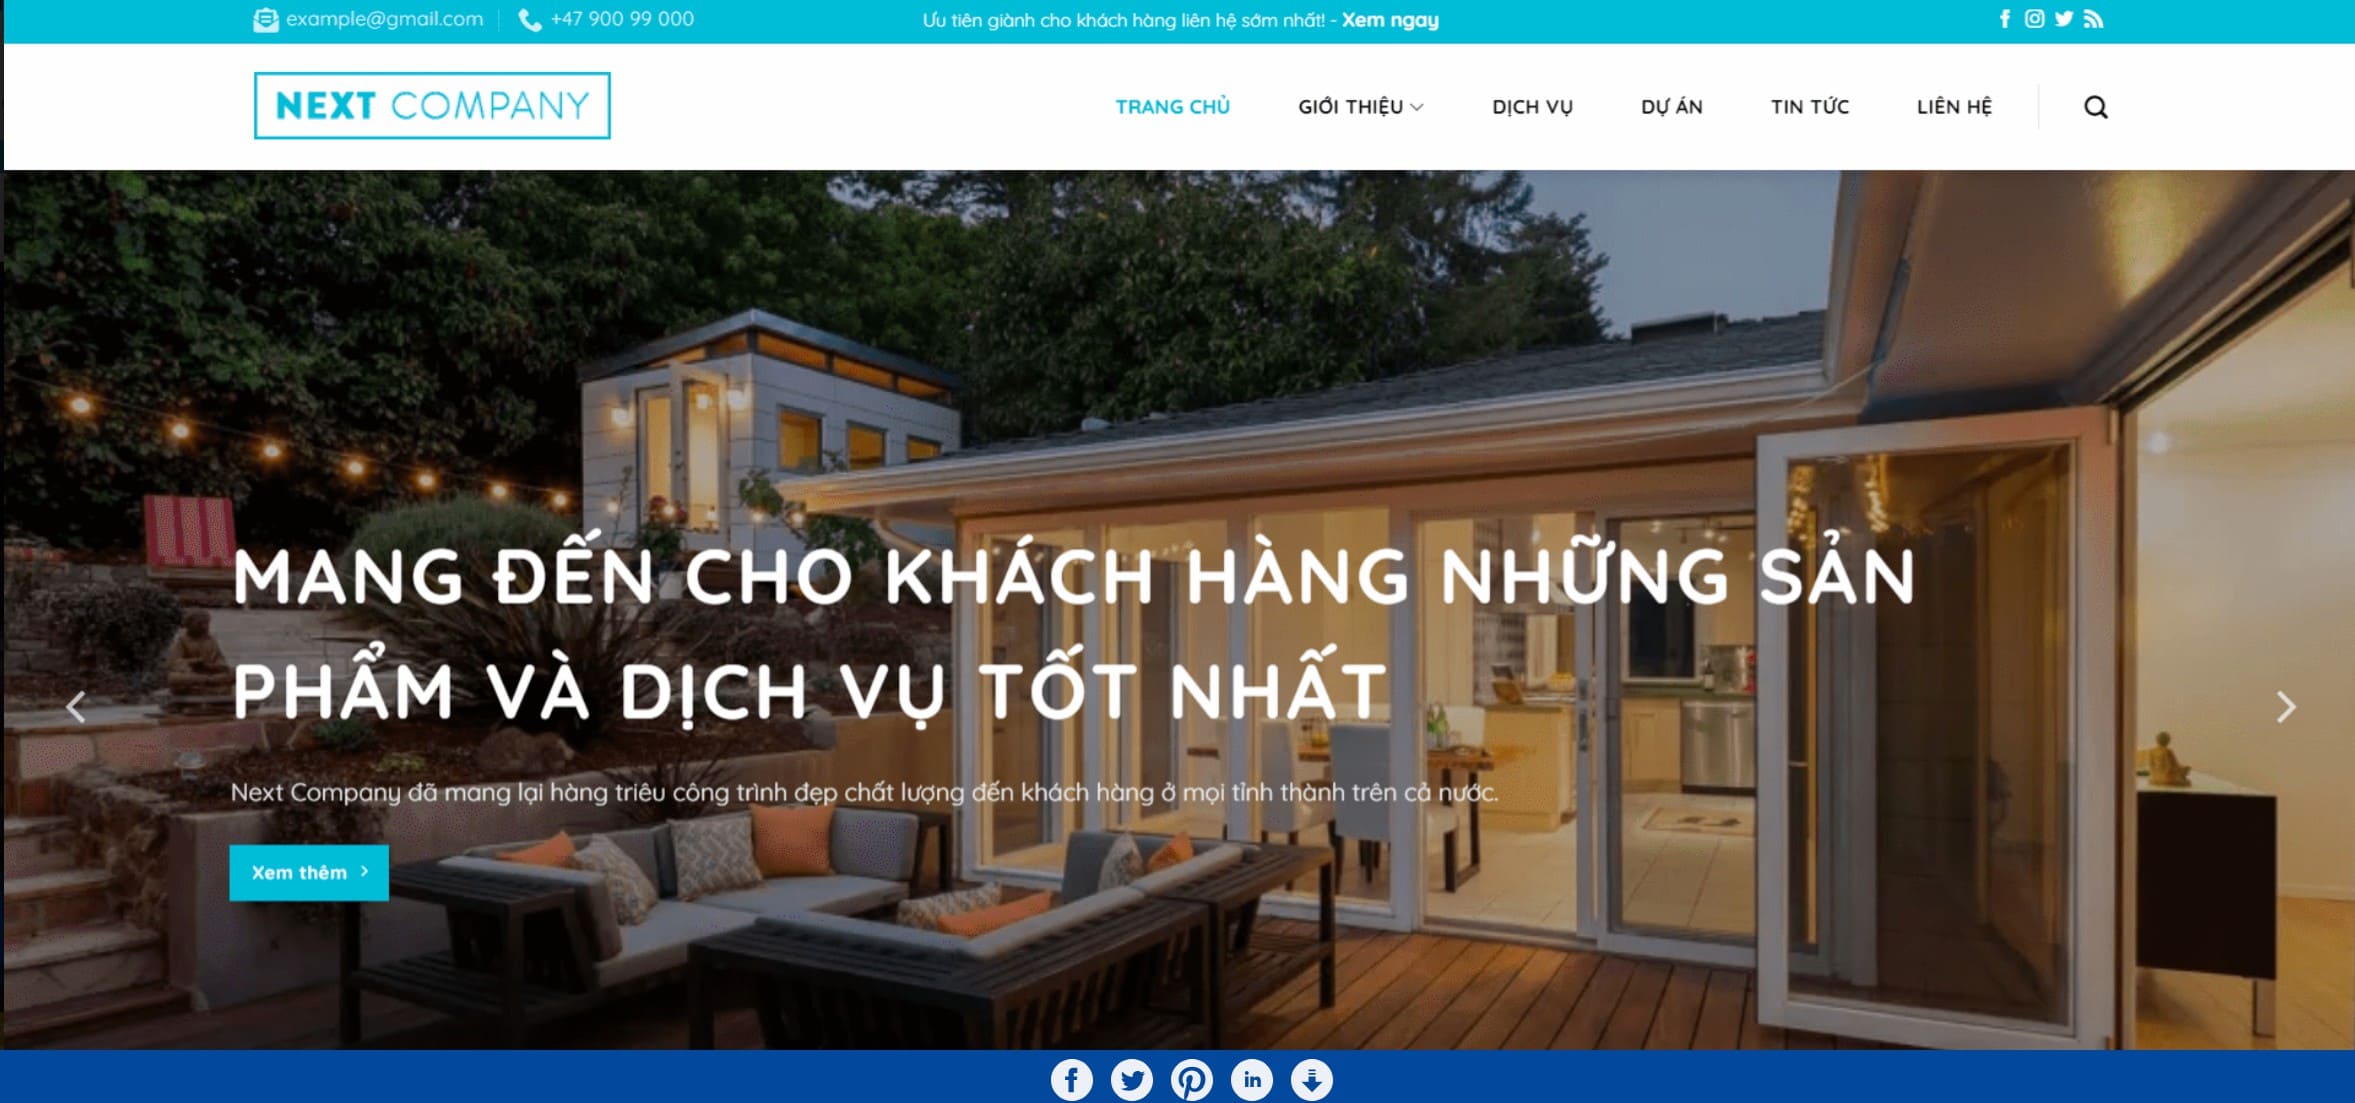 Website giới thiệu căn hộ cho thuê cũng như dịch vụ